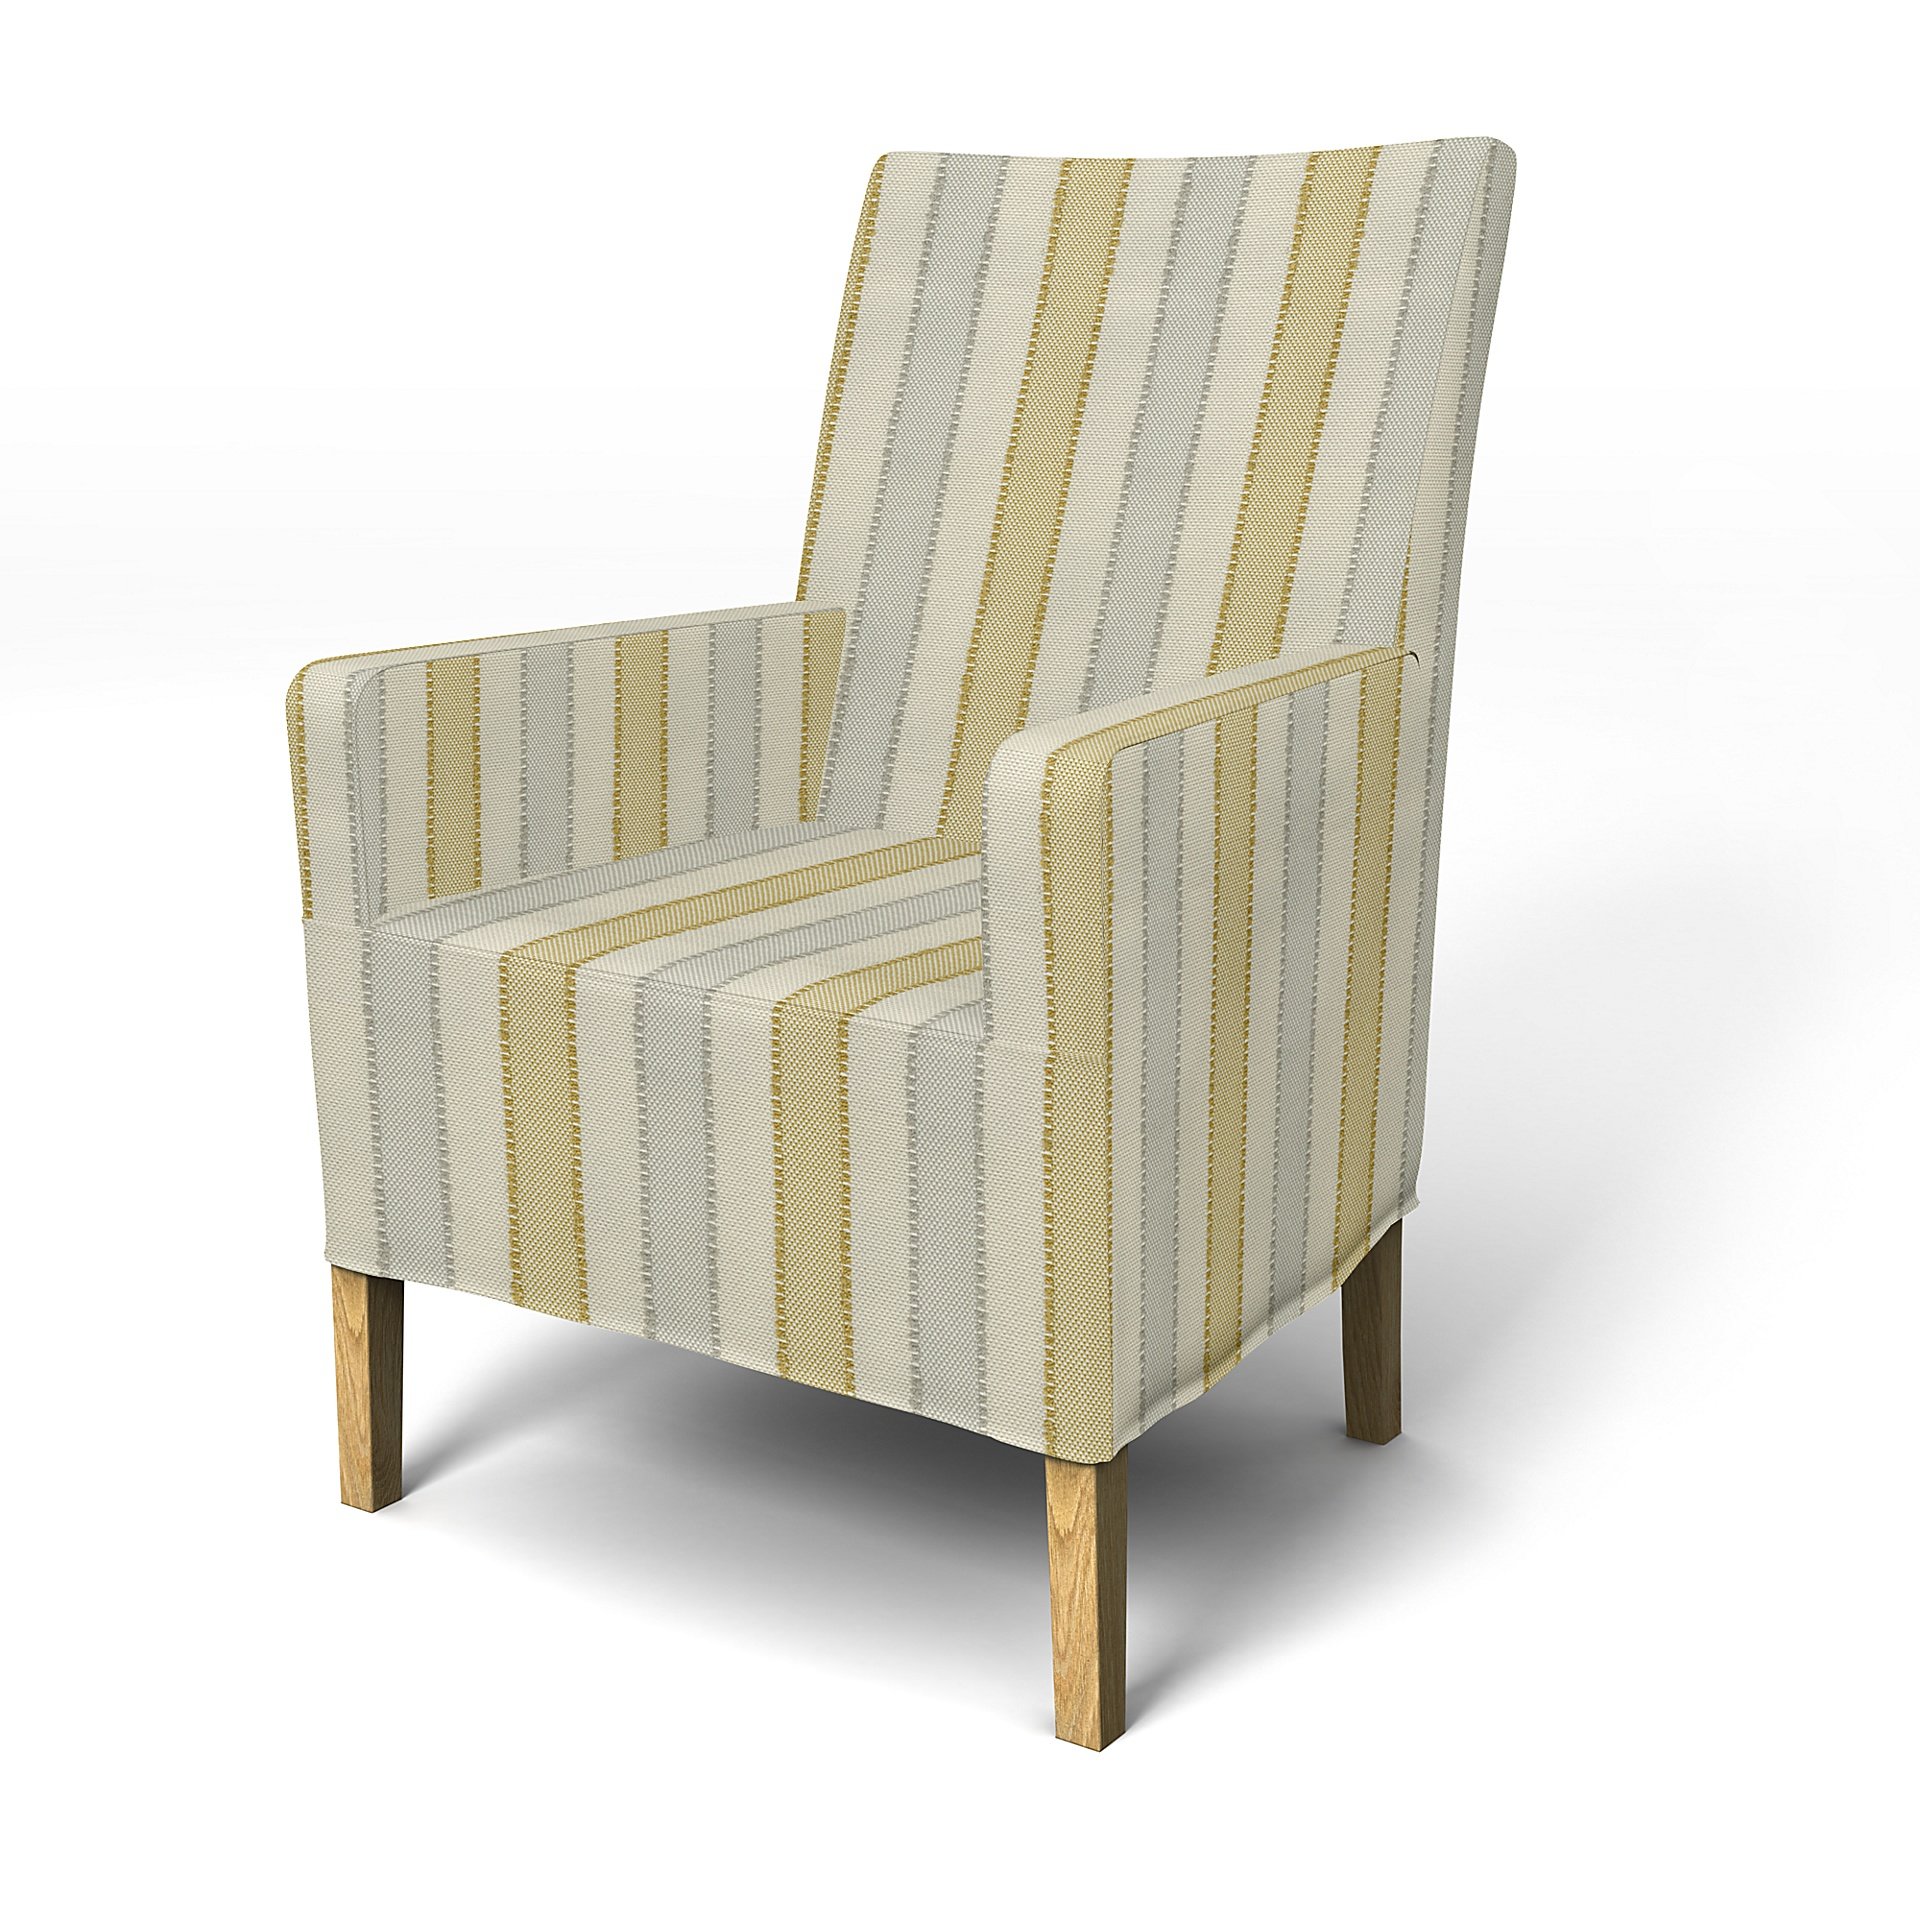 IKEA - Henriksdal, Chair cover w/ armrest, medium length skirt, Sunset Yellow, Outdoor - Bemz